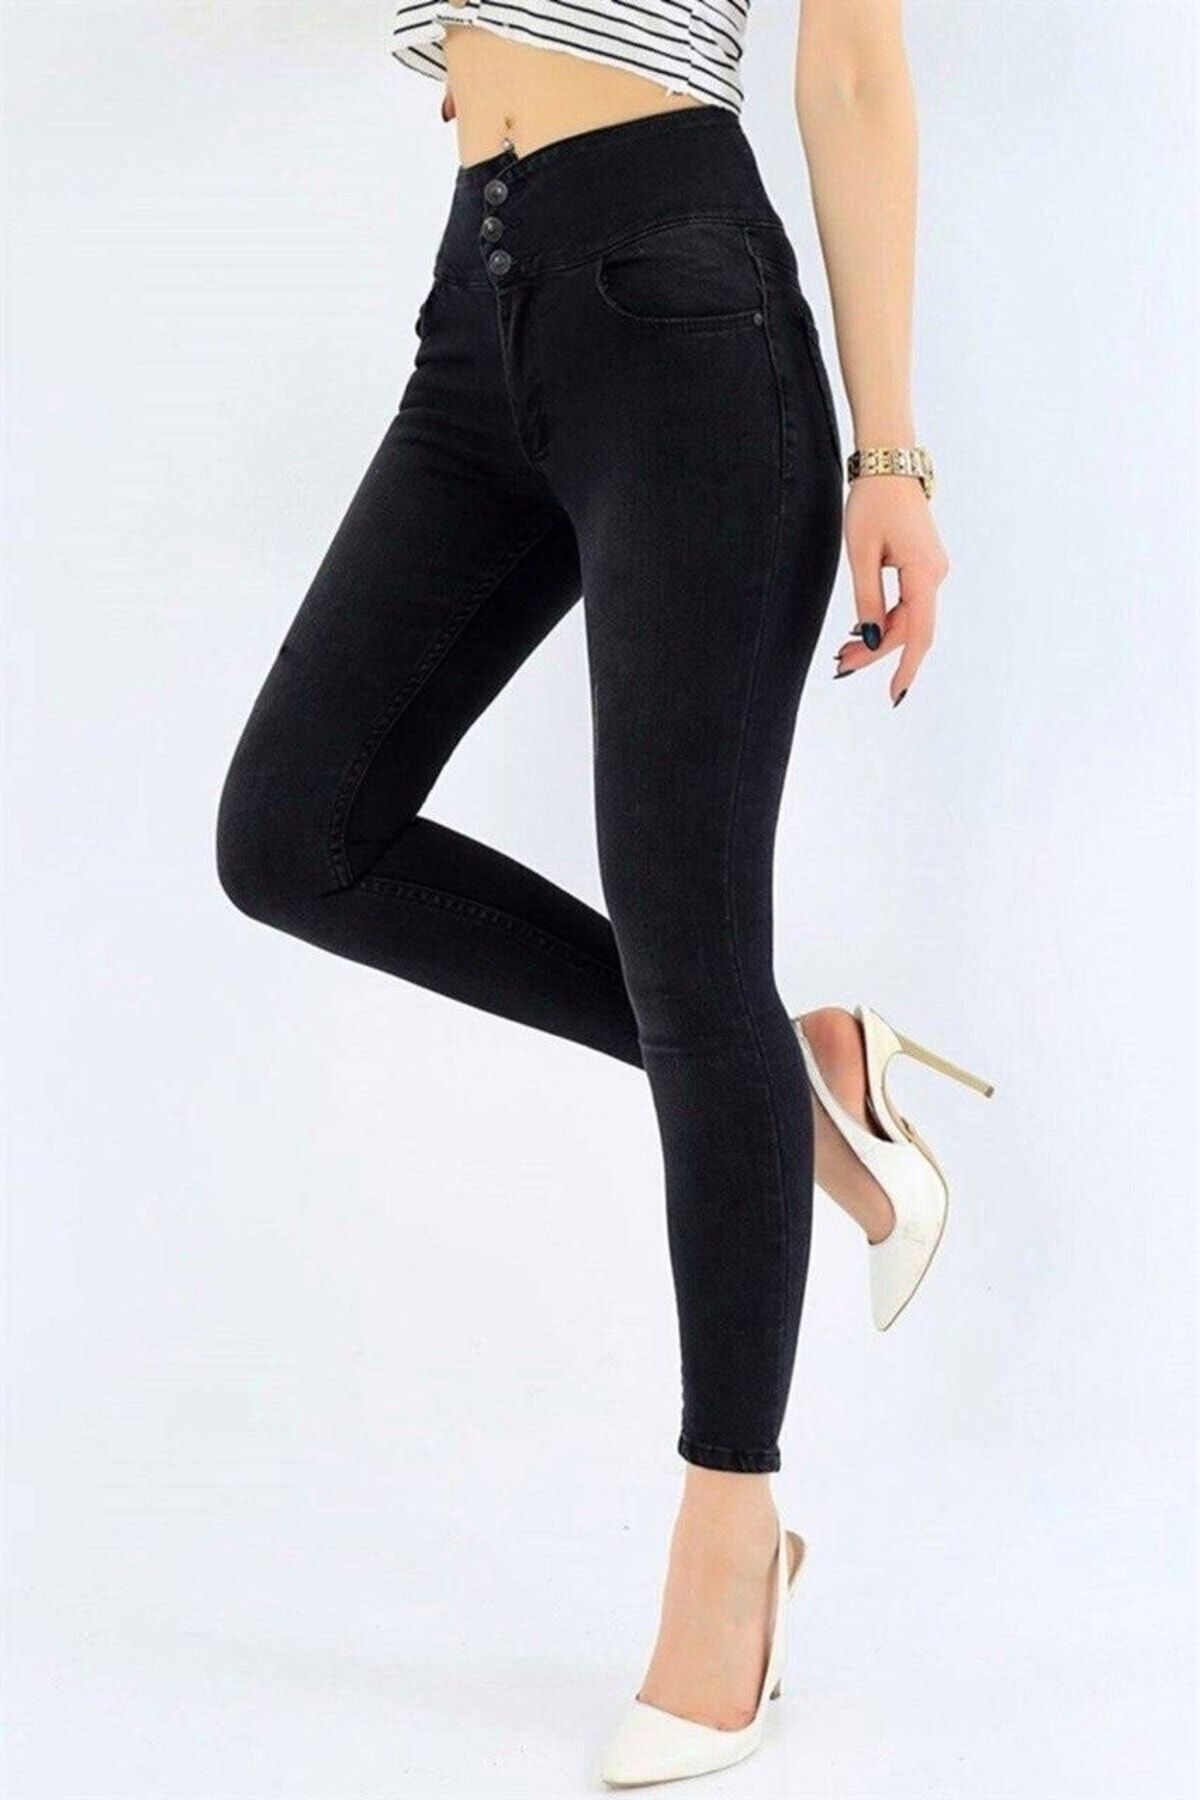 rengamoda Kadın Siyah, Dar Paça Ve Slim Fit Full Likralı Yüksek Bel Üç Düğmeli Jean Pantolon 90cm